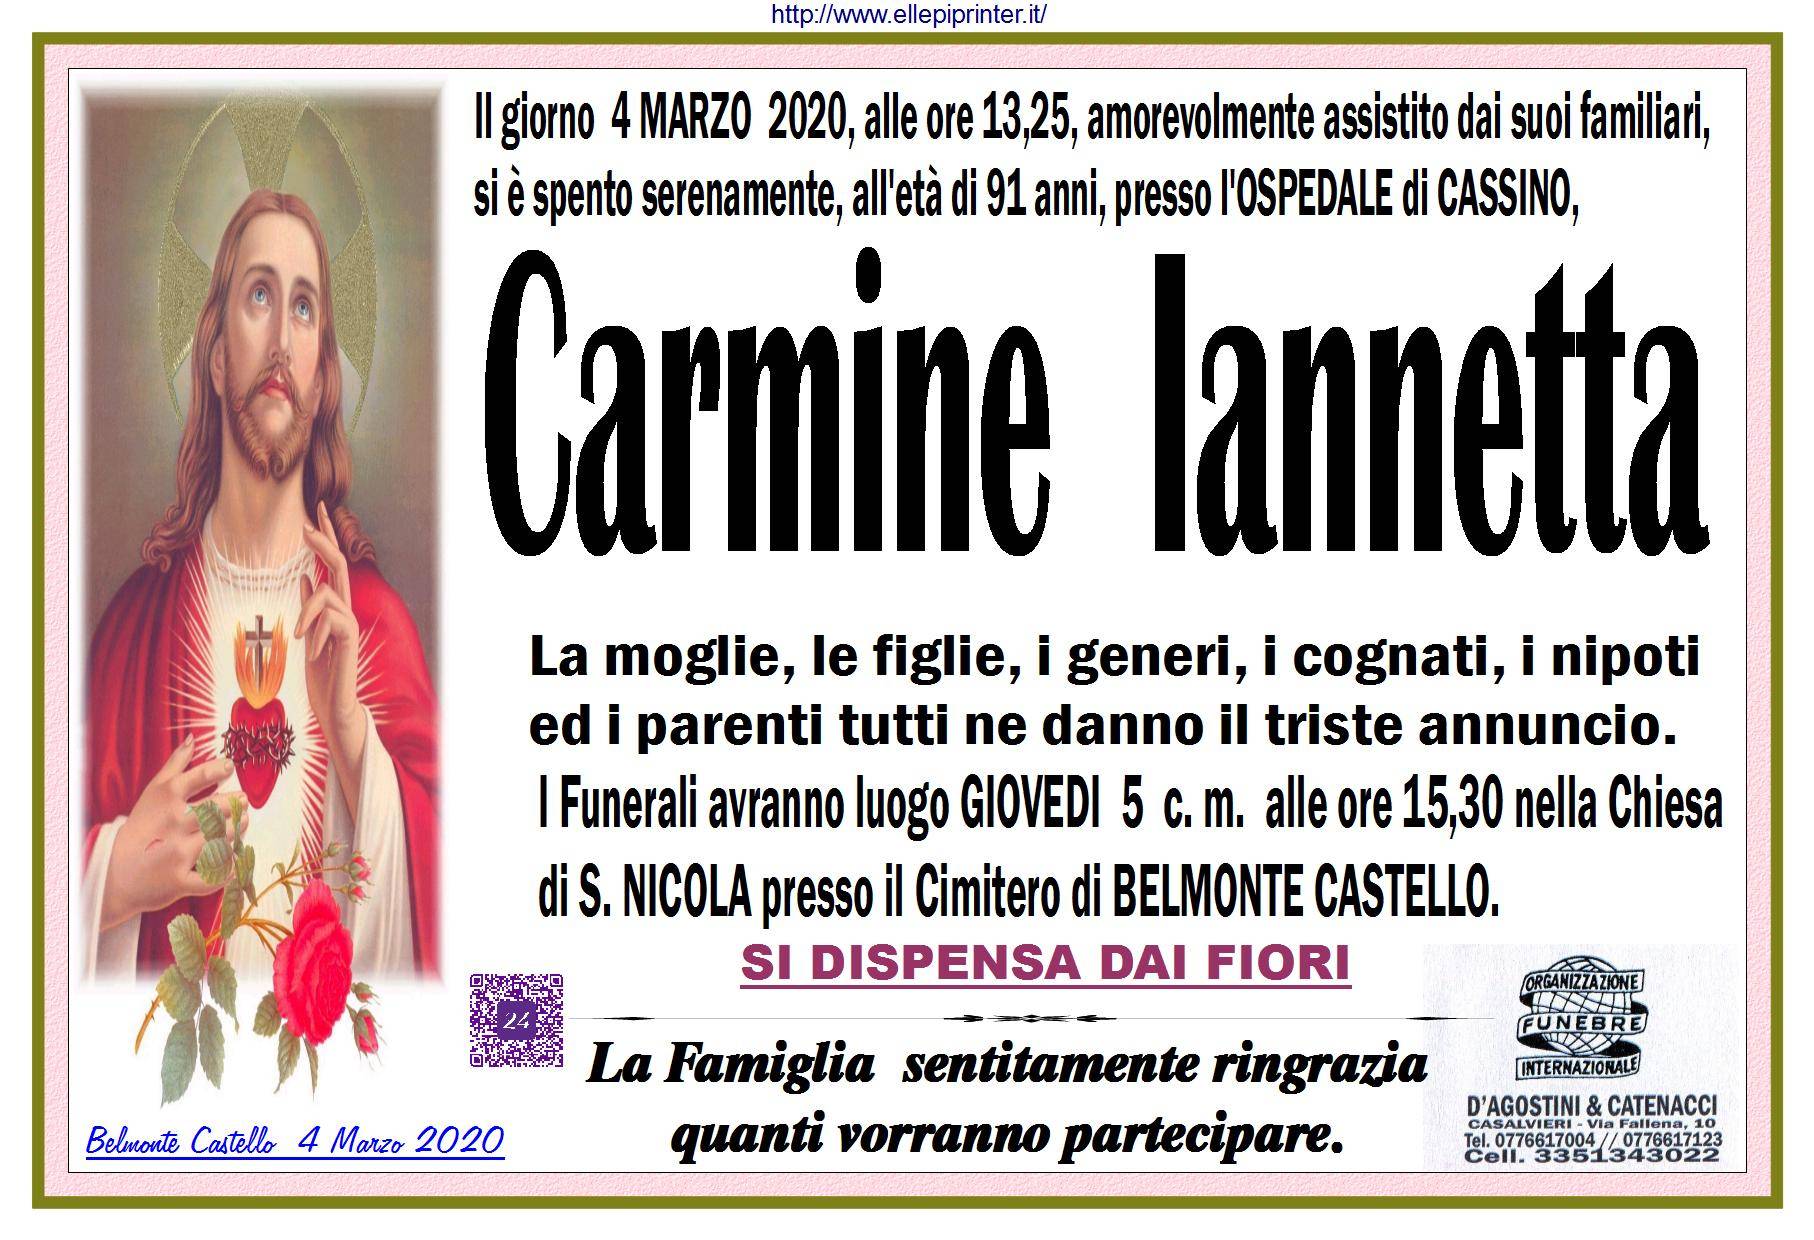 Carmine Iannetta